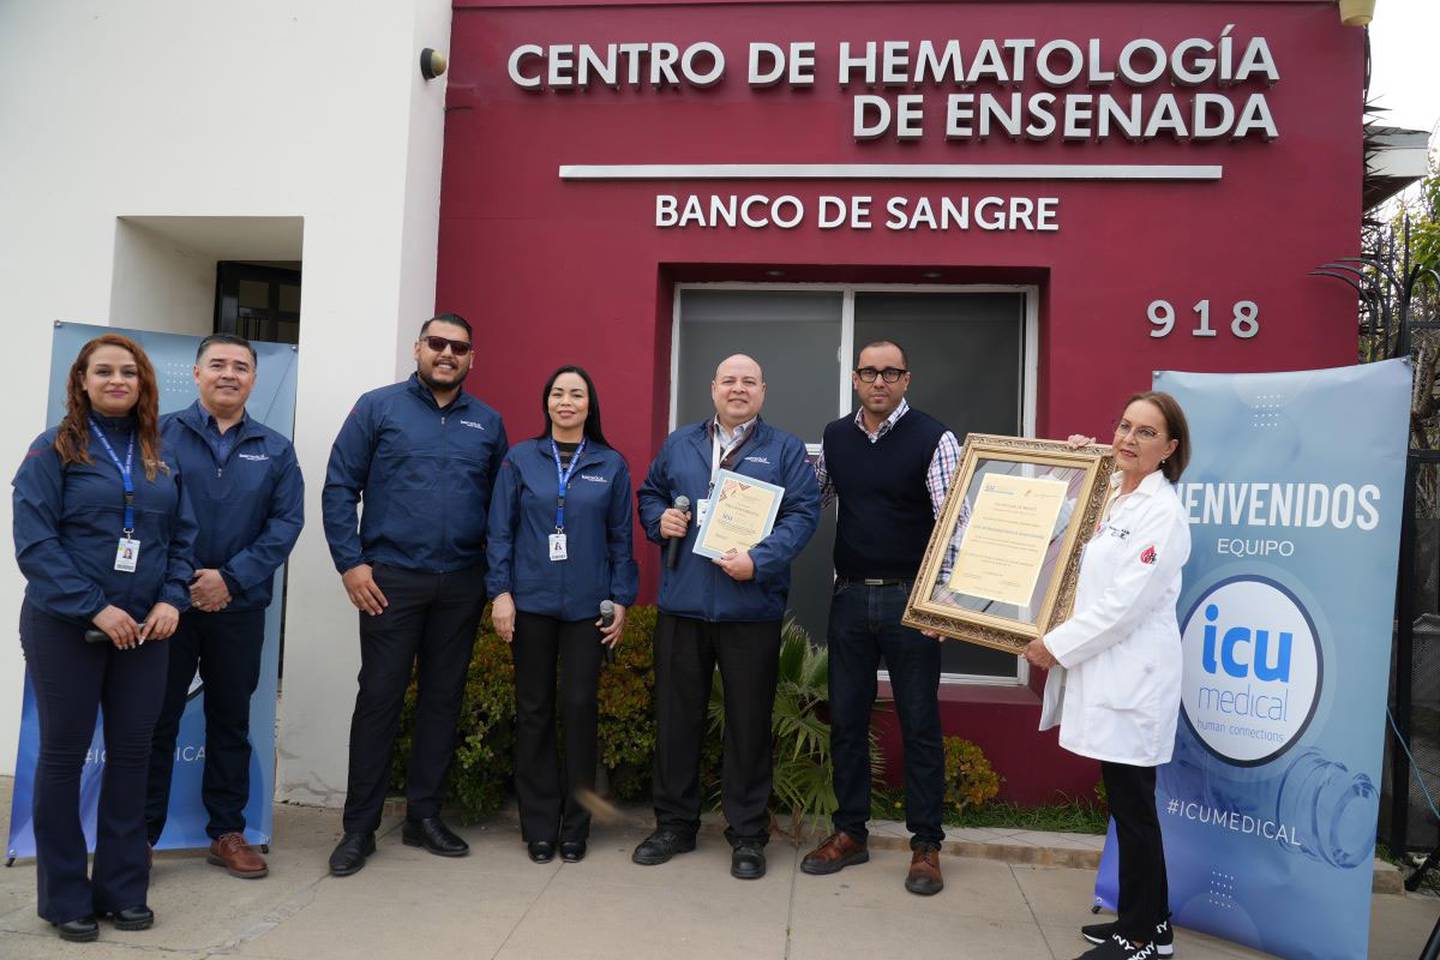 David Chacón Zavala, director de Operaciones de ICU Medical de México en Ensenada, agradeció al Banco de Sangre de Ensenada por el reconocimiento.